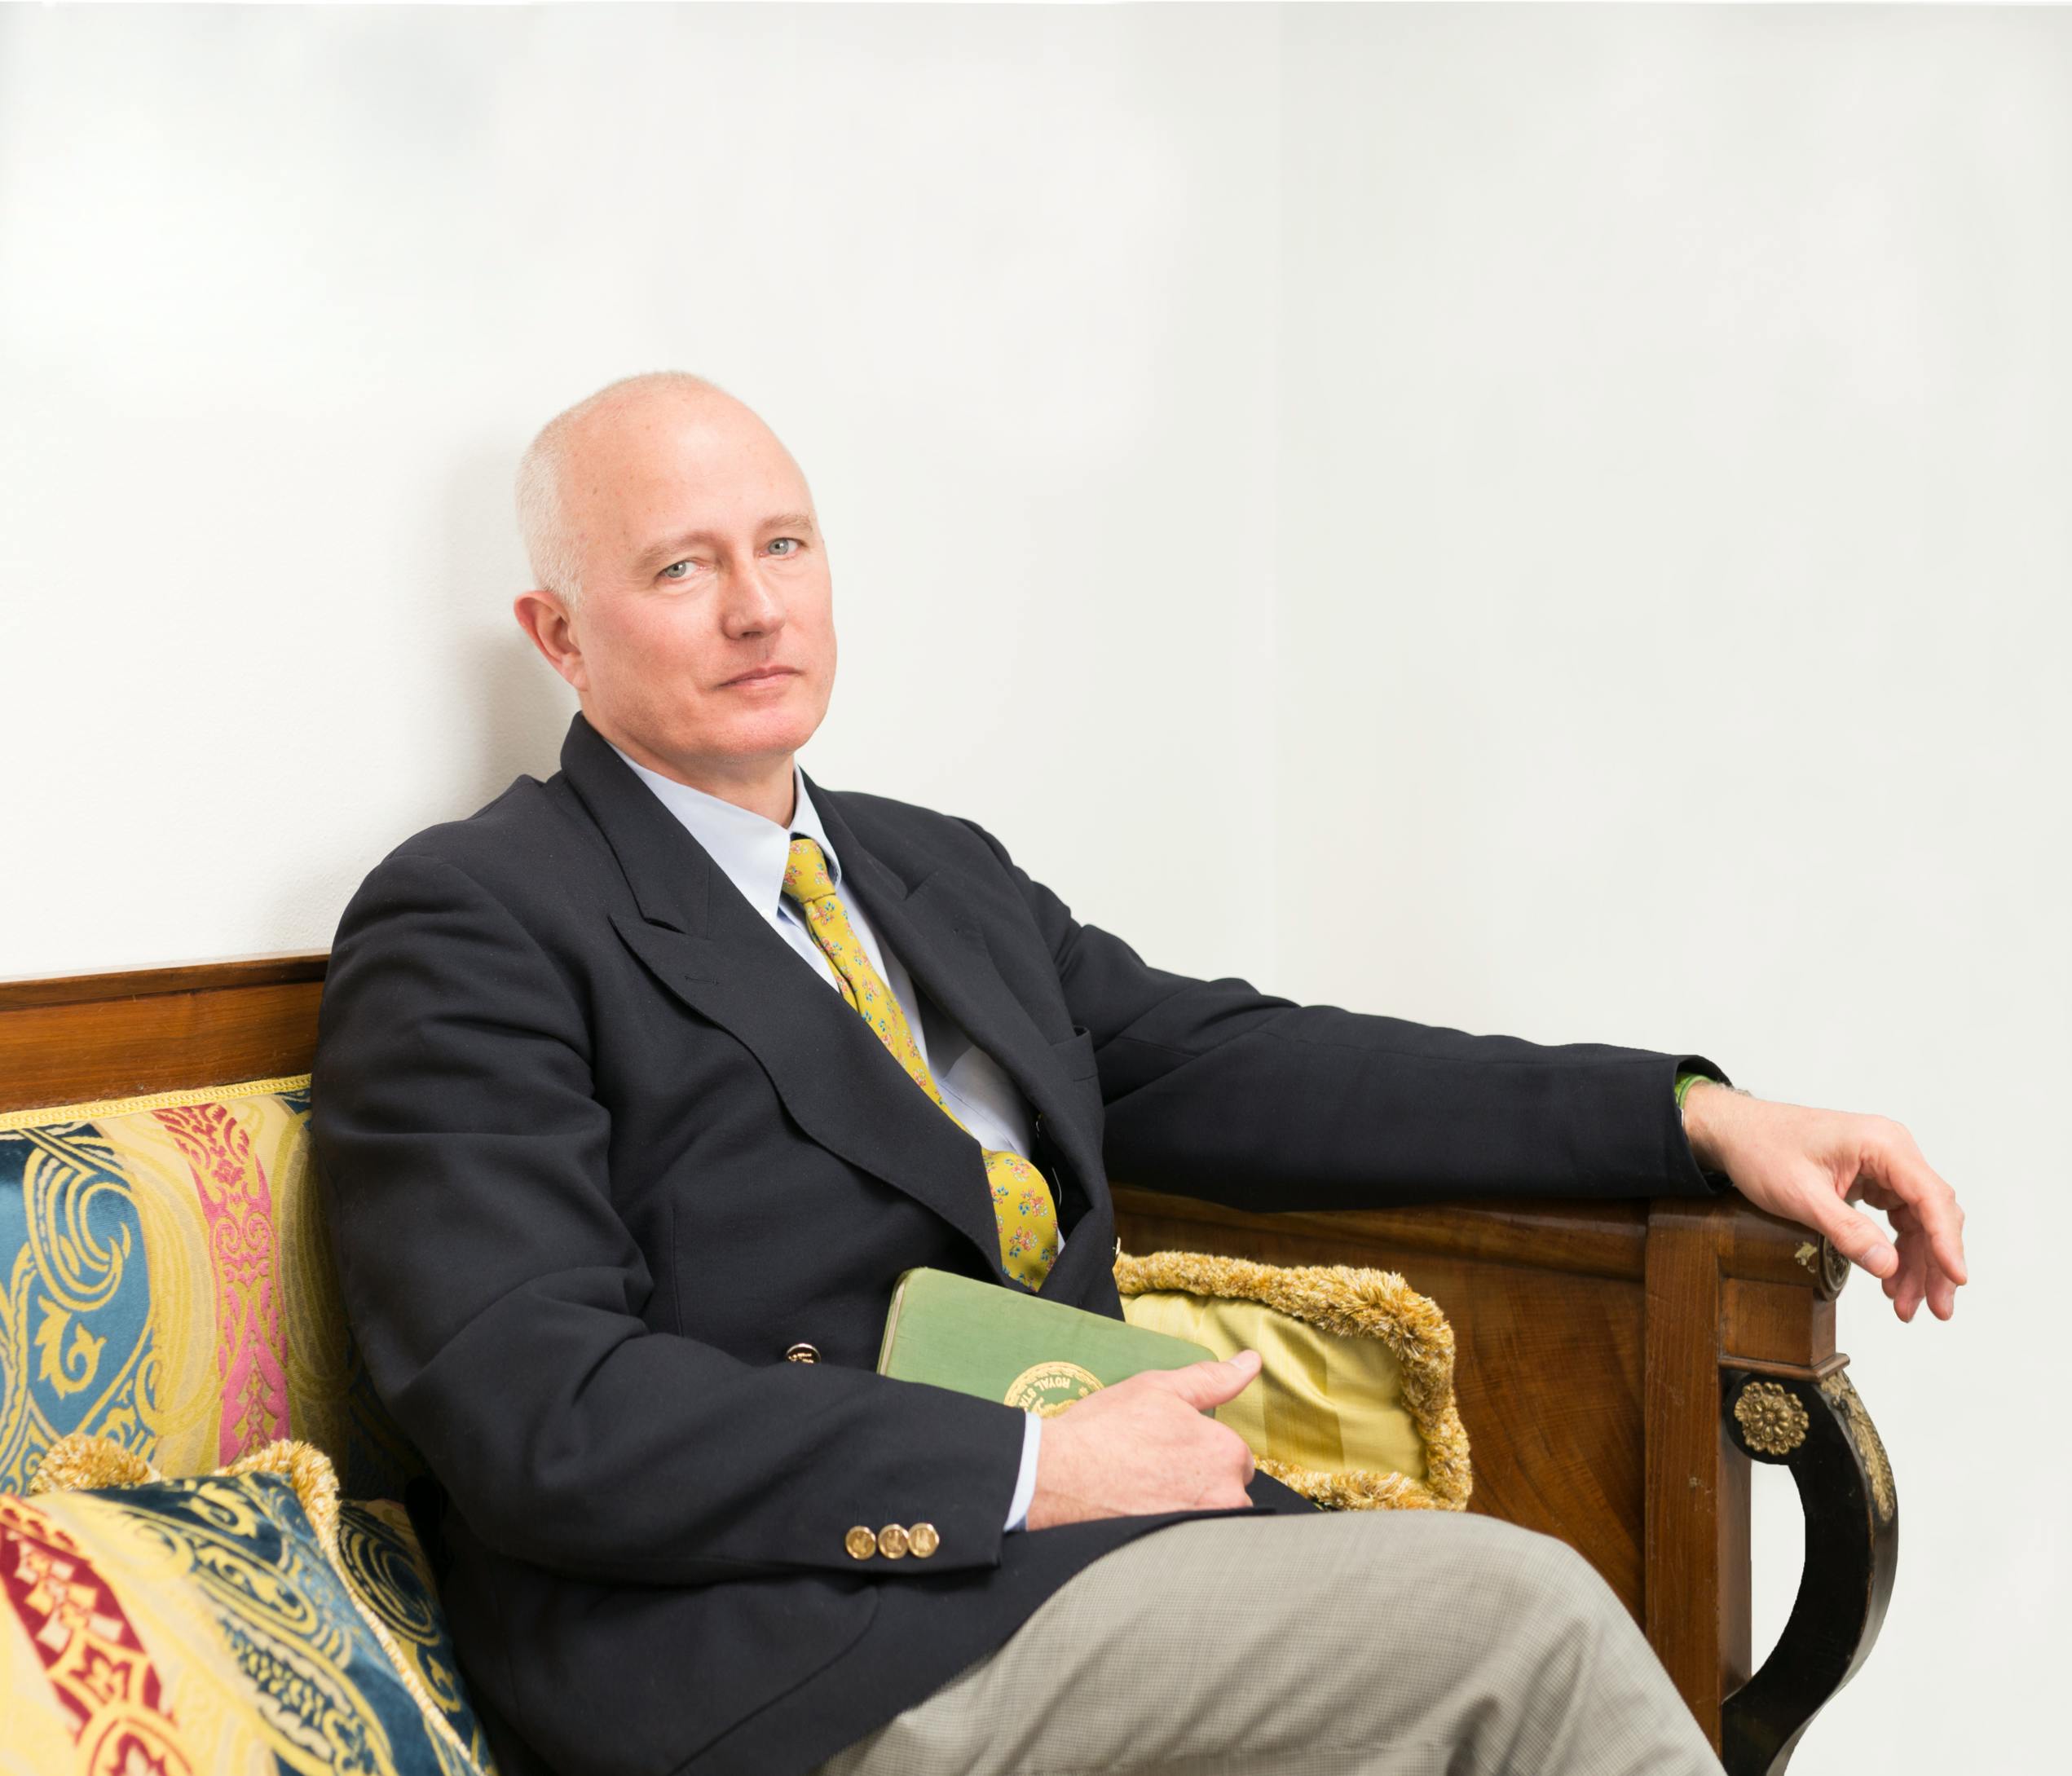 Foto del Professor Stefano Pallanti seduto su una poltrona di legno d'epoca.